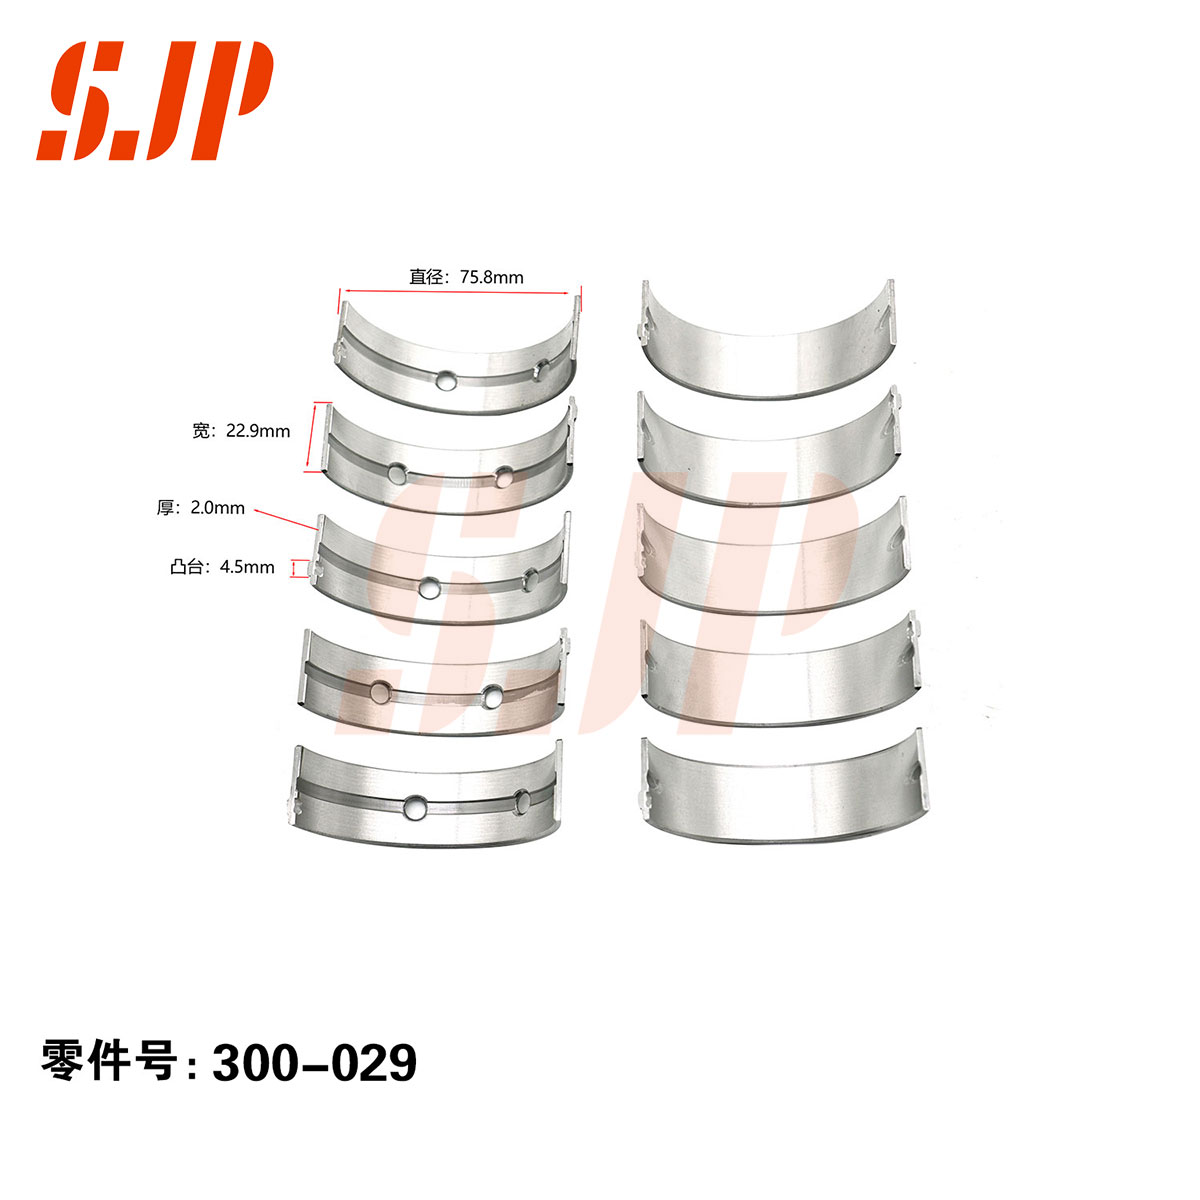 SJ-300-029 Main Bearing Set For 4J25TC/493ZLQ4 Futon Landscape 2.5T/2.8T